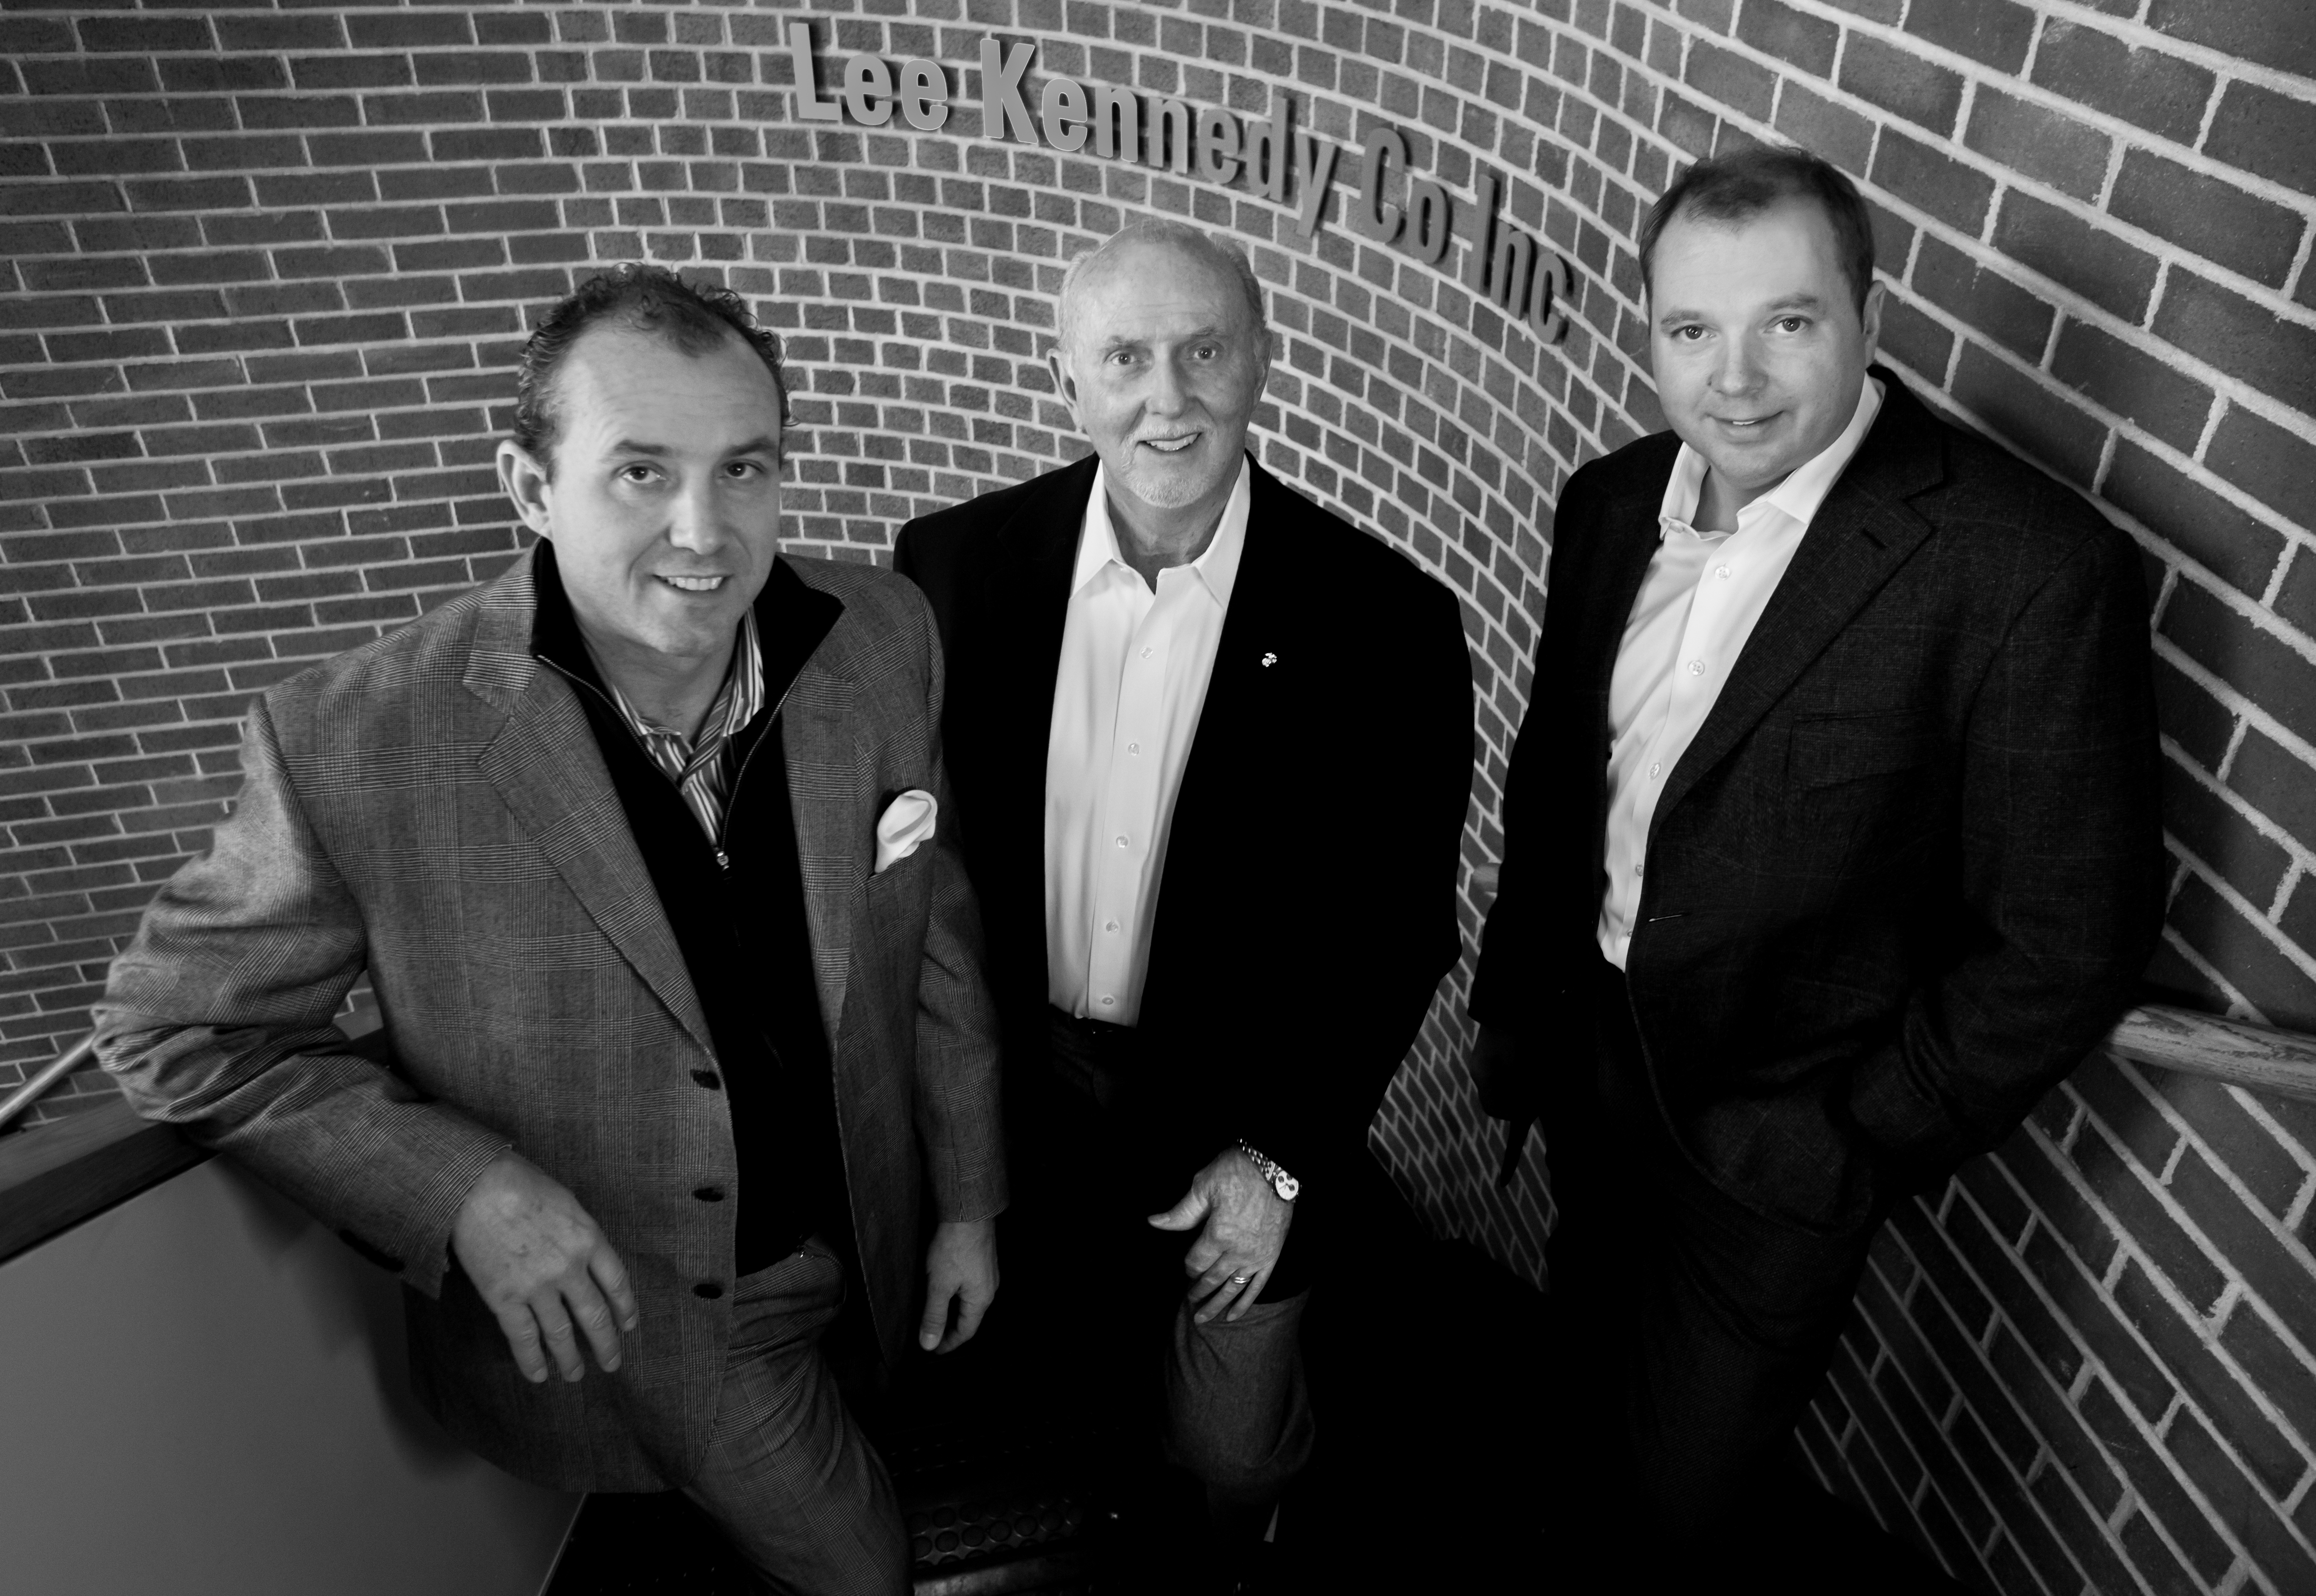 Lee Kennedy company celebrates 40 years in business – Bill Brett